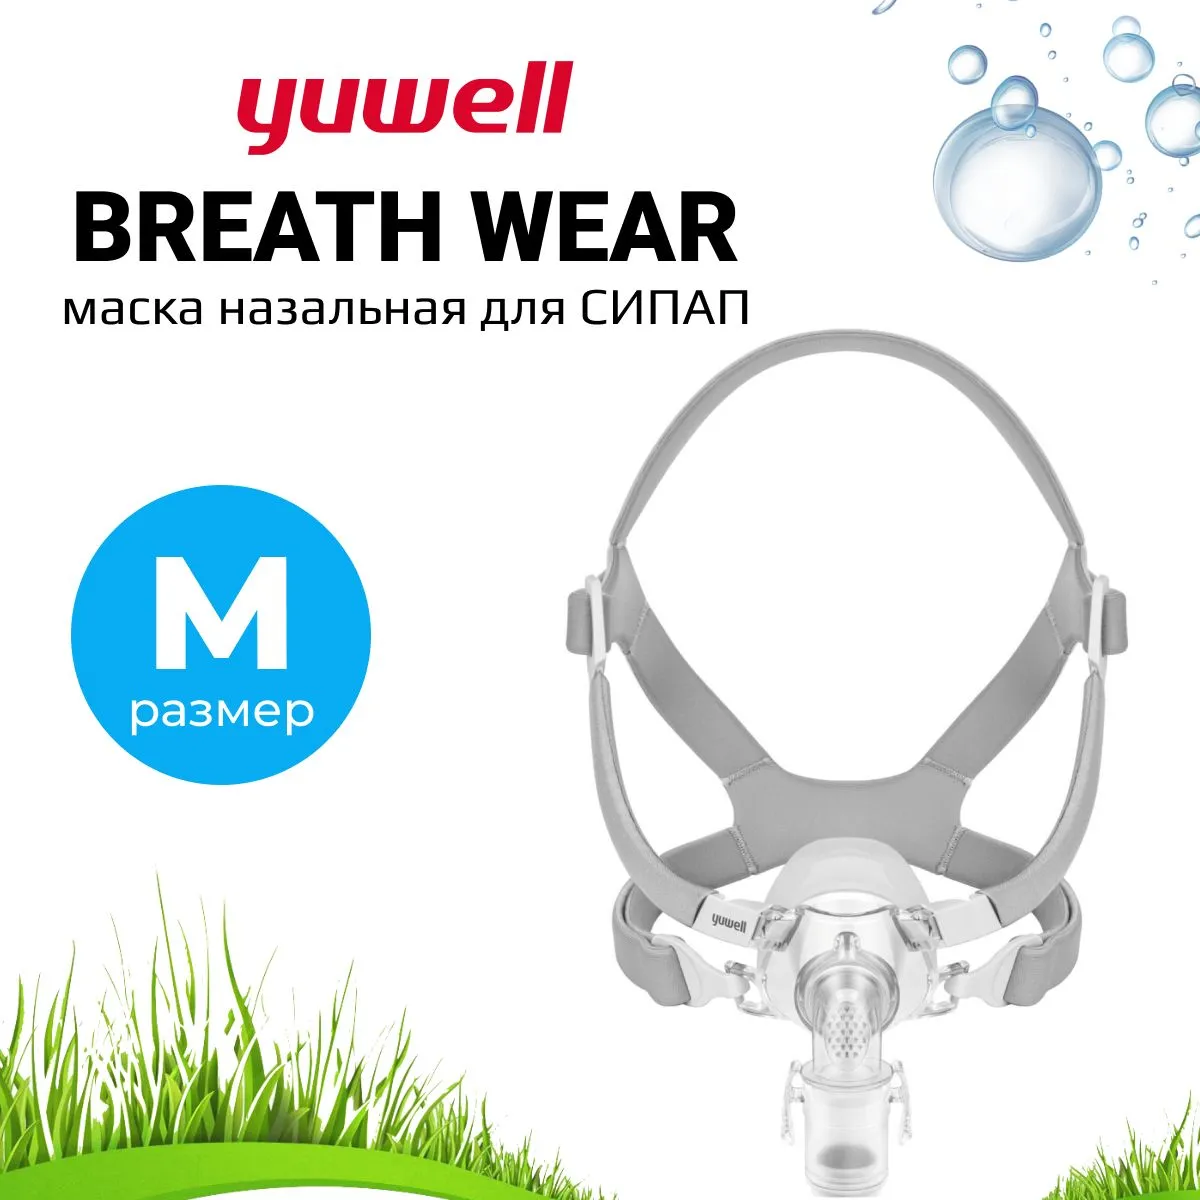 Назальная Маска Yuwell BreathWear Series YN-03 (Размер M) для СИПАП